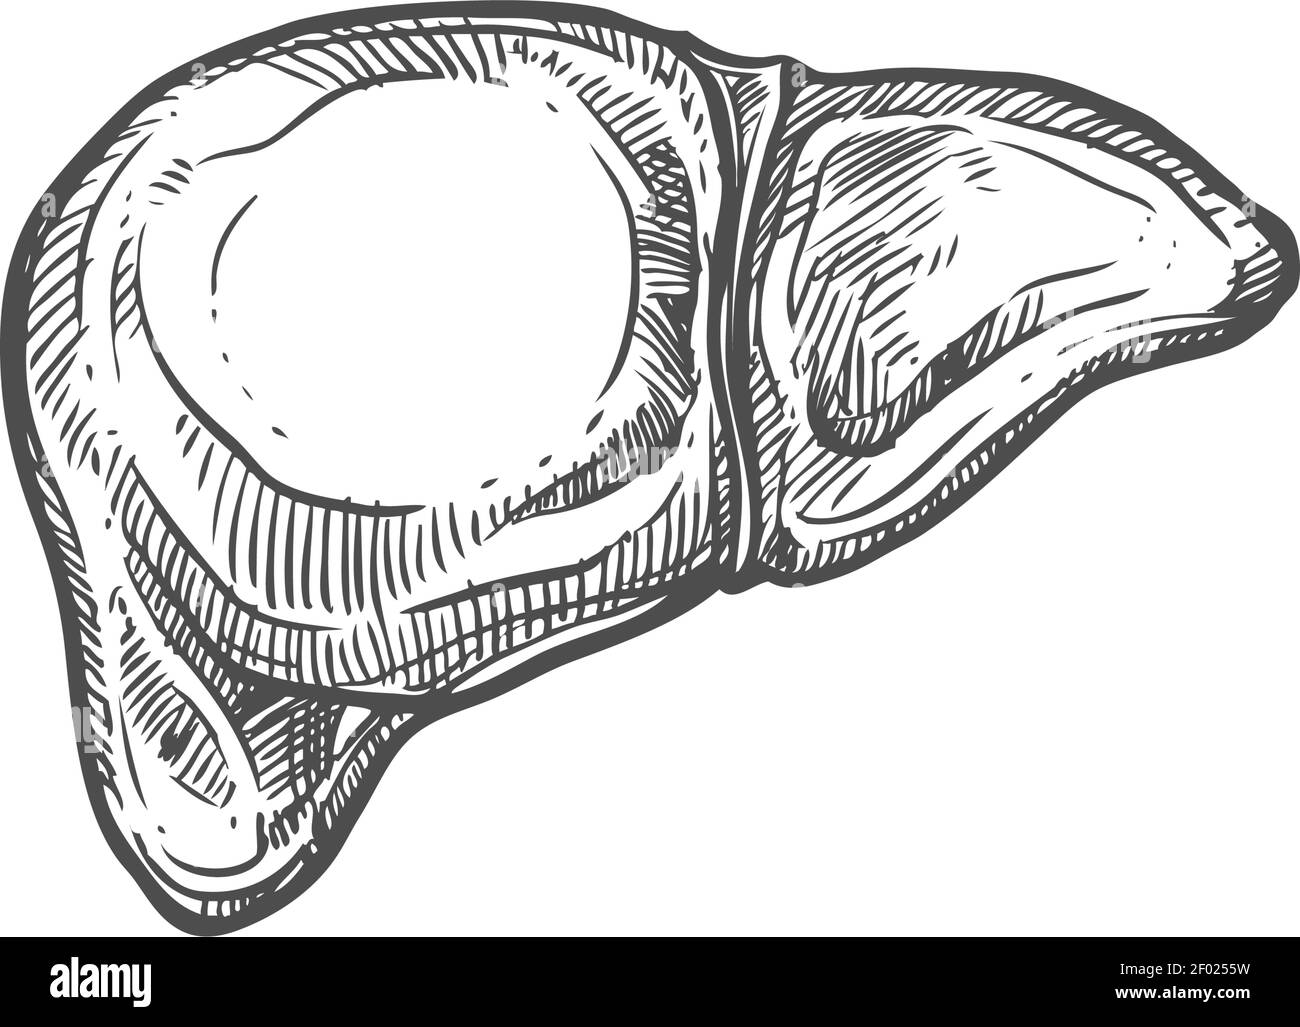 Anatomical drawing human organ liver sketch Vector Image